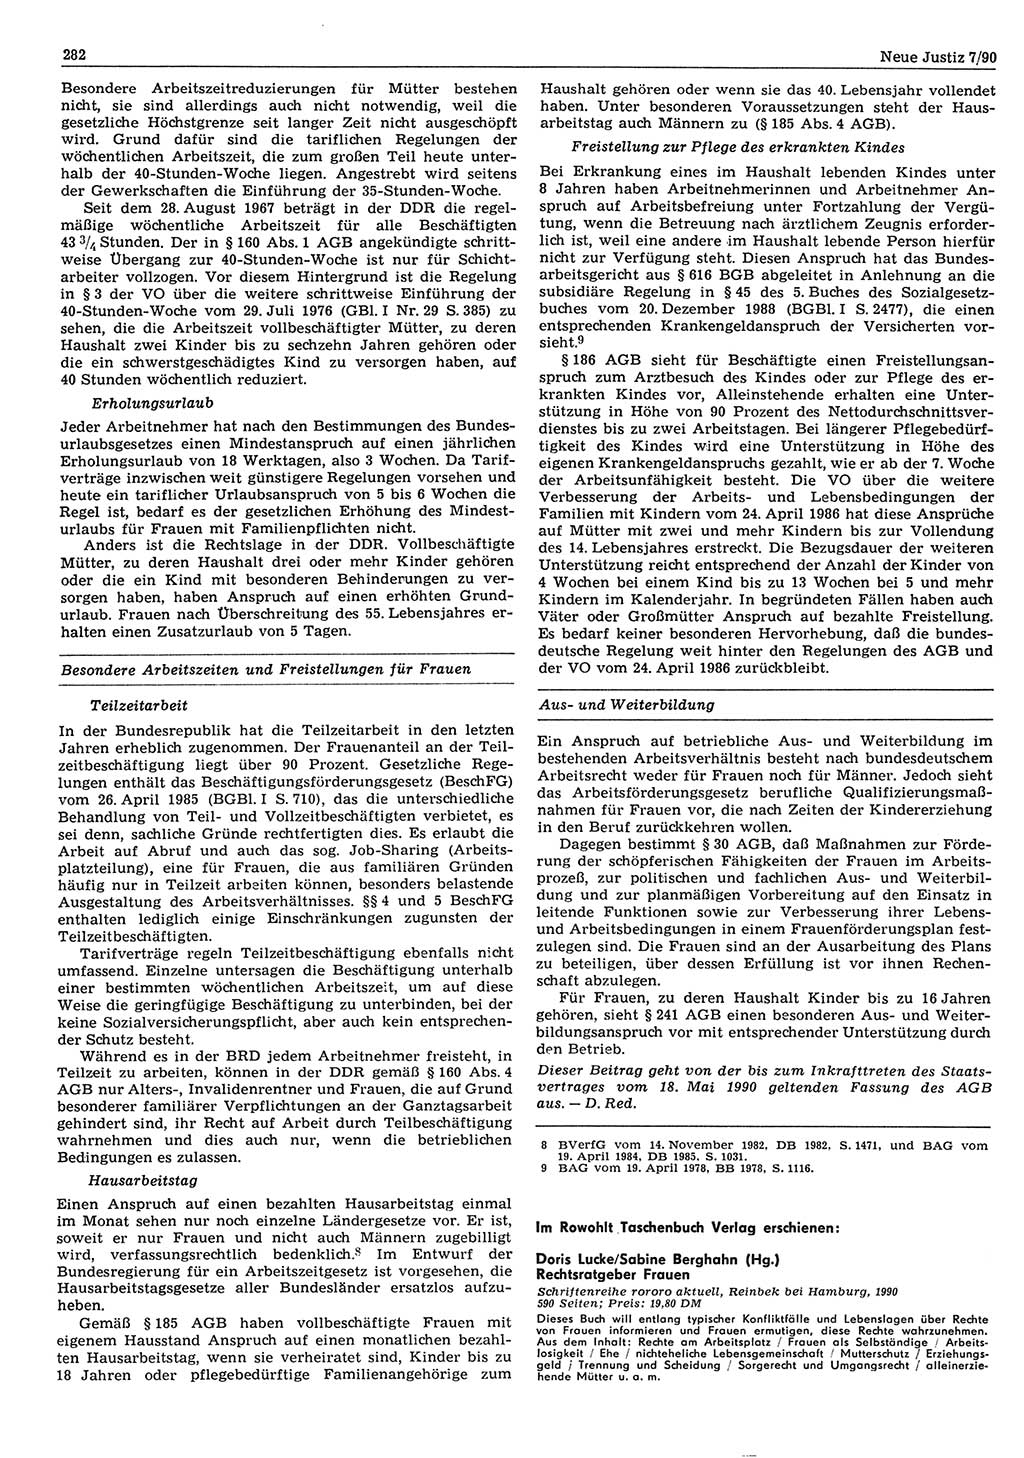 Neue Justiz (NJ), Zeitschrift für Rechtsetzung und Rechtsanwendung [Deutsche Demokratische Republik (DDR)], 44. Jahrgang 1990, Seite 282 (NJ DDR 1990, S. 282)